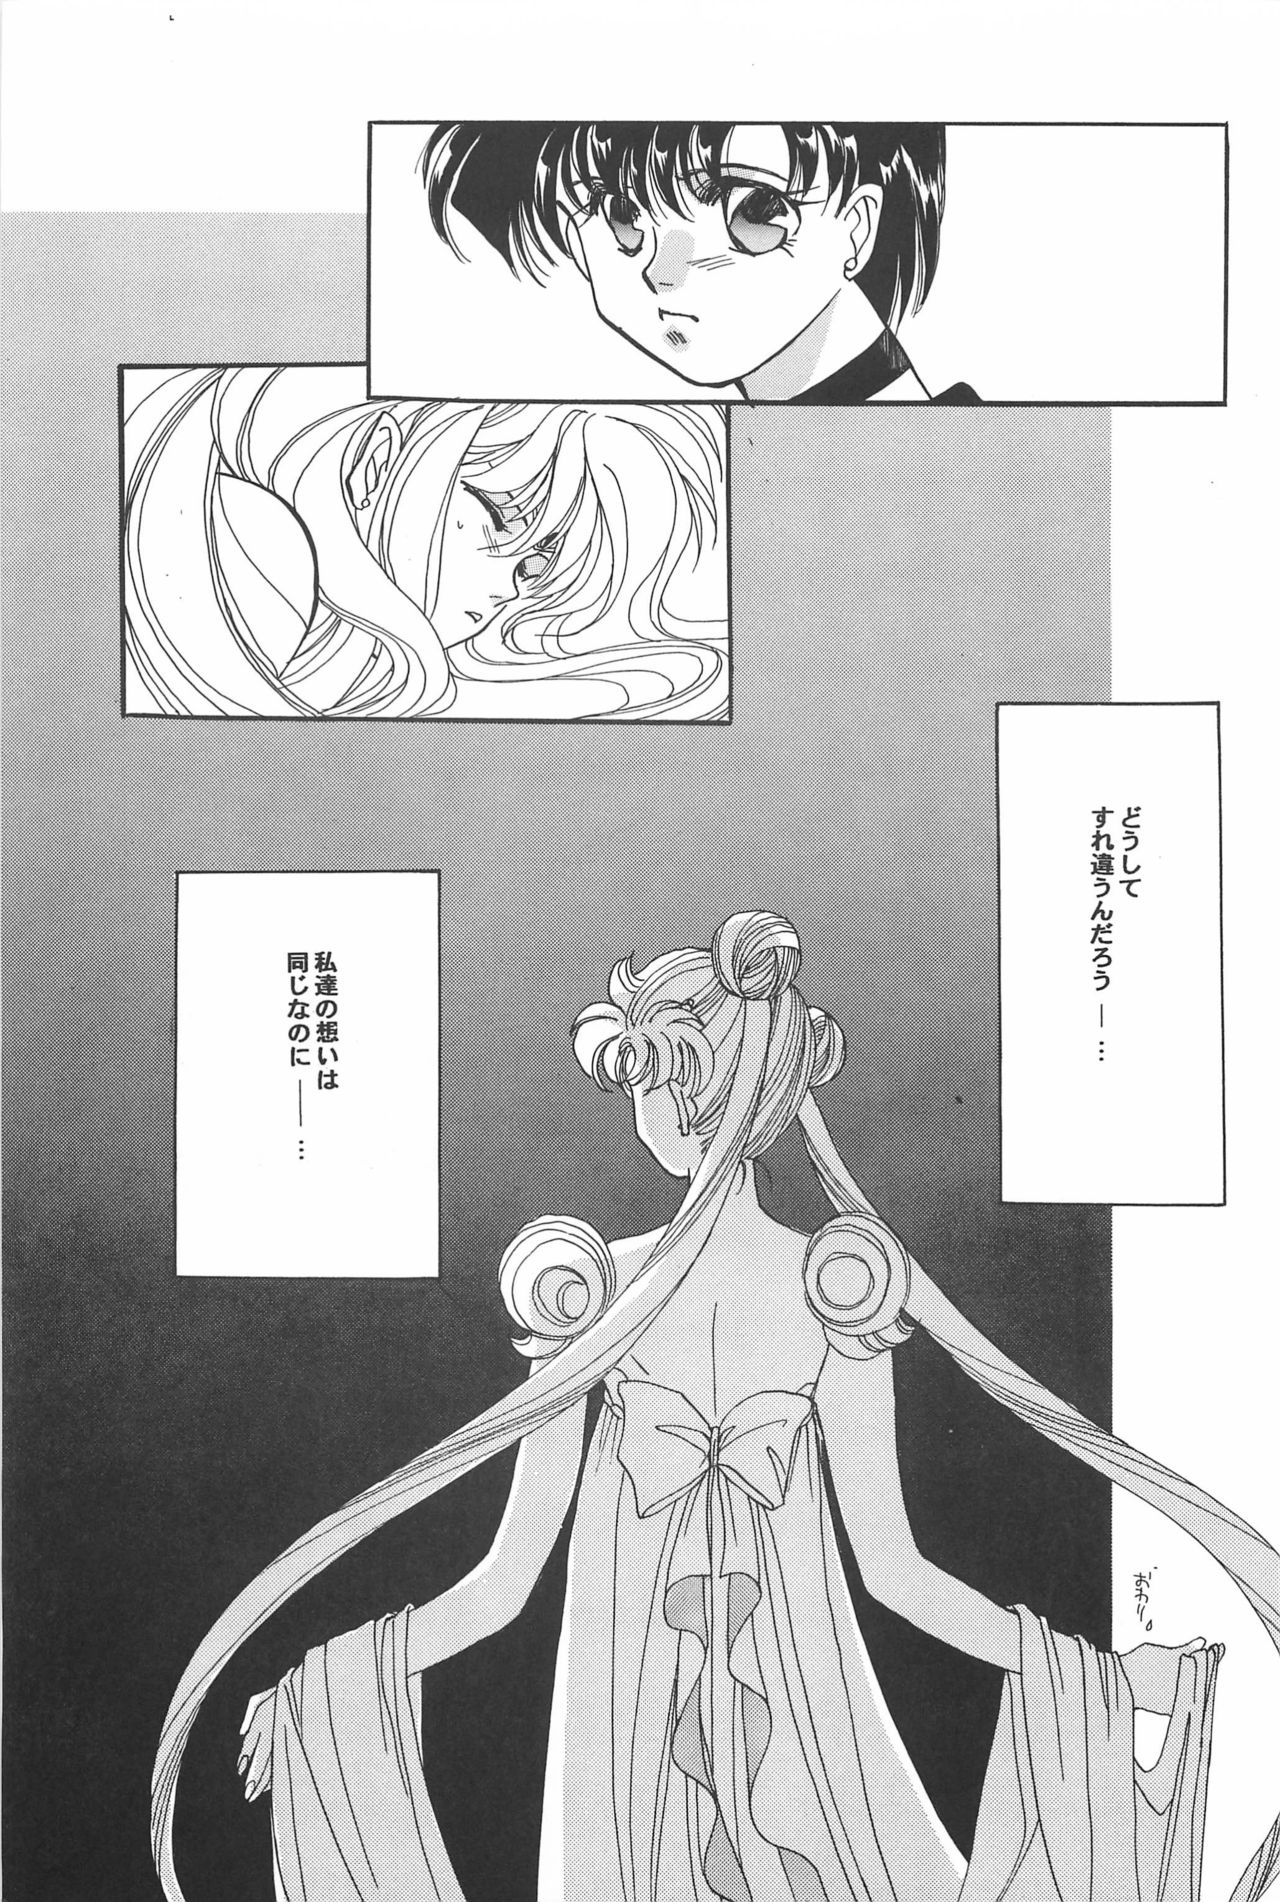 [Hello World (Muttri Moony)] Kaze no You ni Yume no You ni - Sailor Moon Collection (Sailor Moon) 146